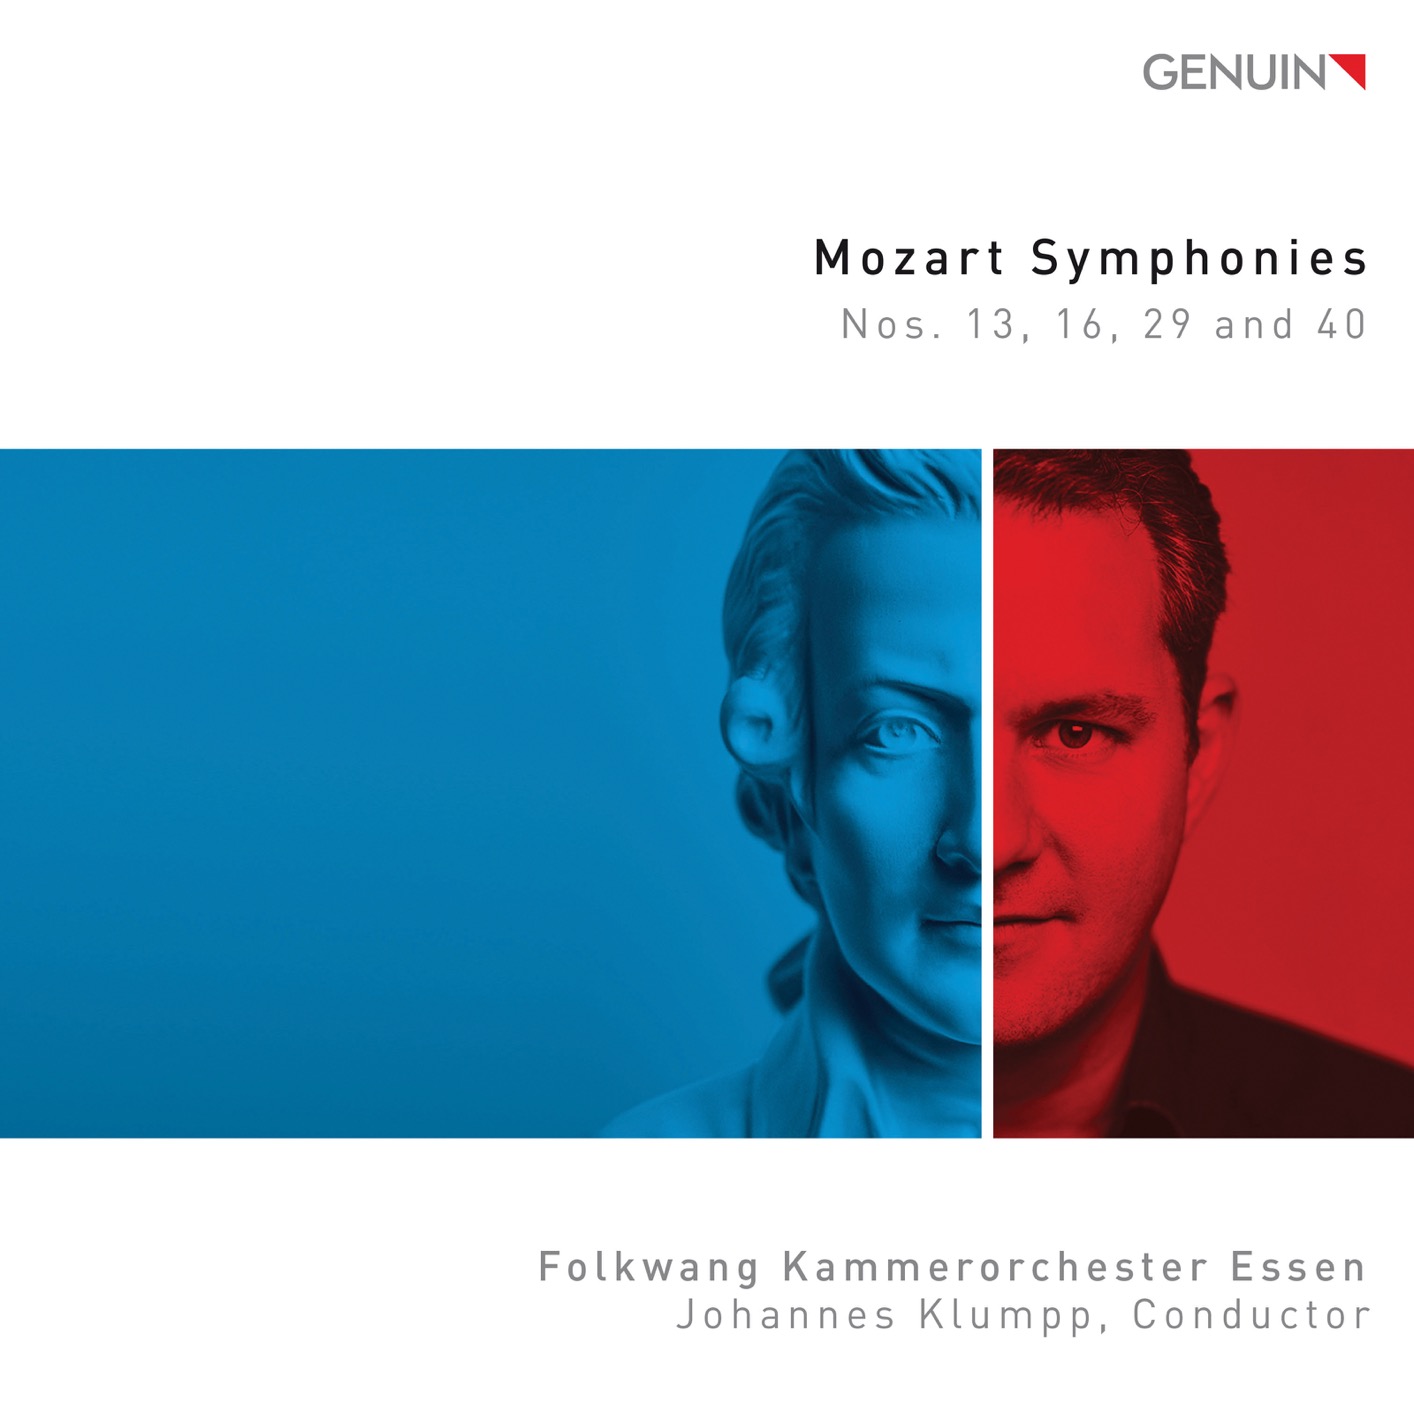 Folkwang Kammerorchester Essen & Johannes Klumpp - Mozart: Symphonies Nos. 13, 16, 29 & 40 (2019) [FLAC 24bit/96kHz]